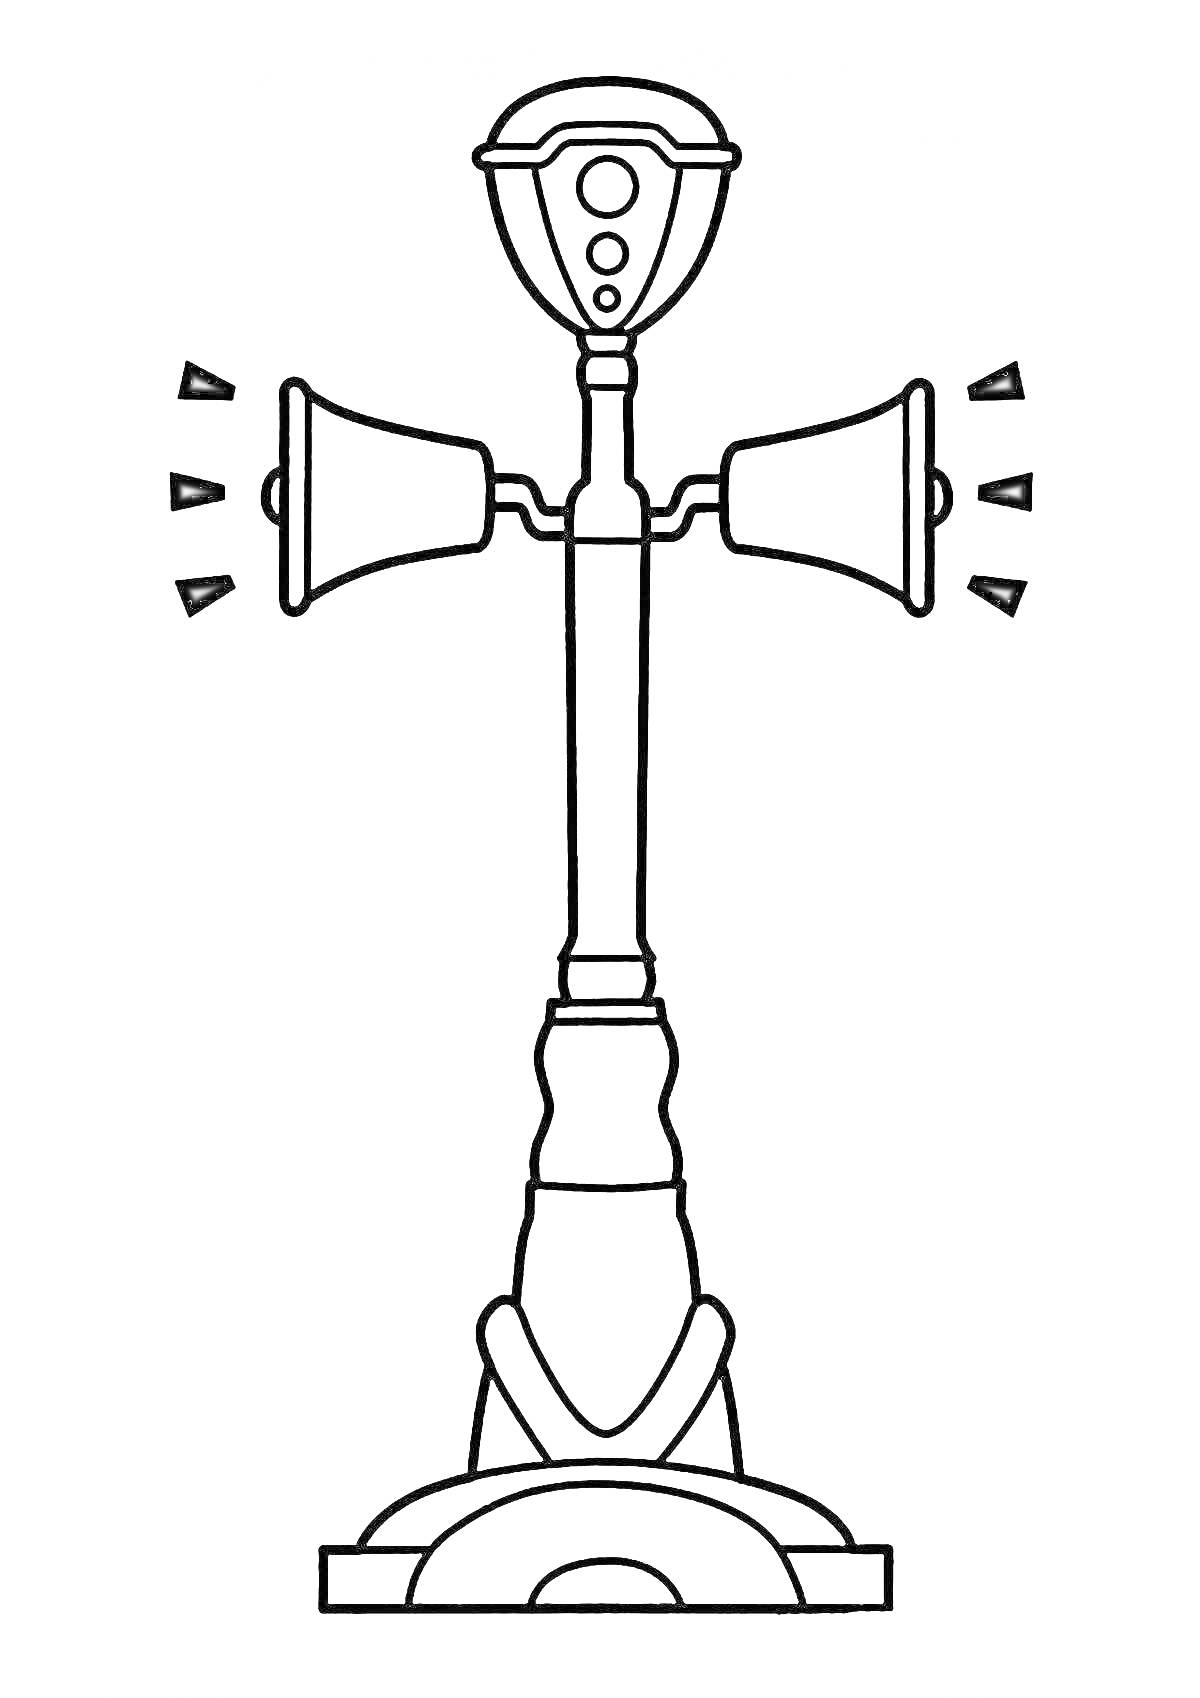 Раскраска Сиреноголовый монстр с двумя сиренами и тремя кнопками на верхней части